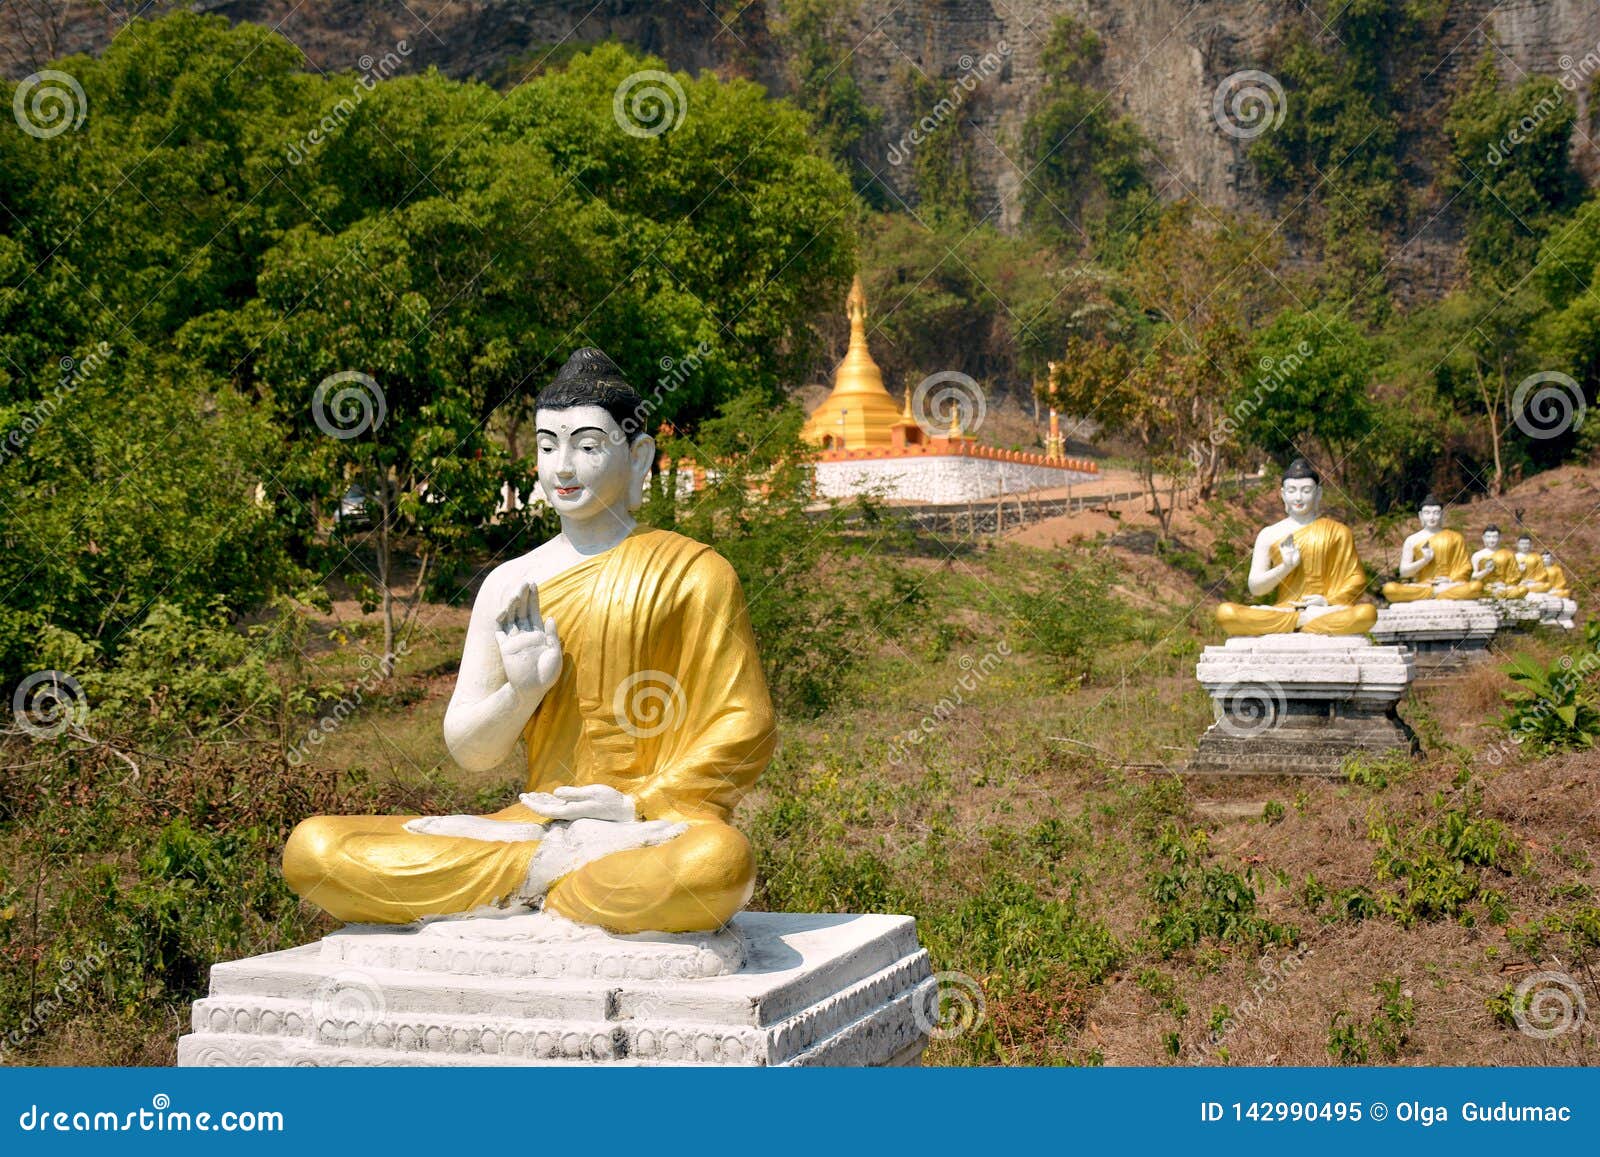 Garden Of One Thousand Buddhas Or Lumbini Garden In Hpa An